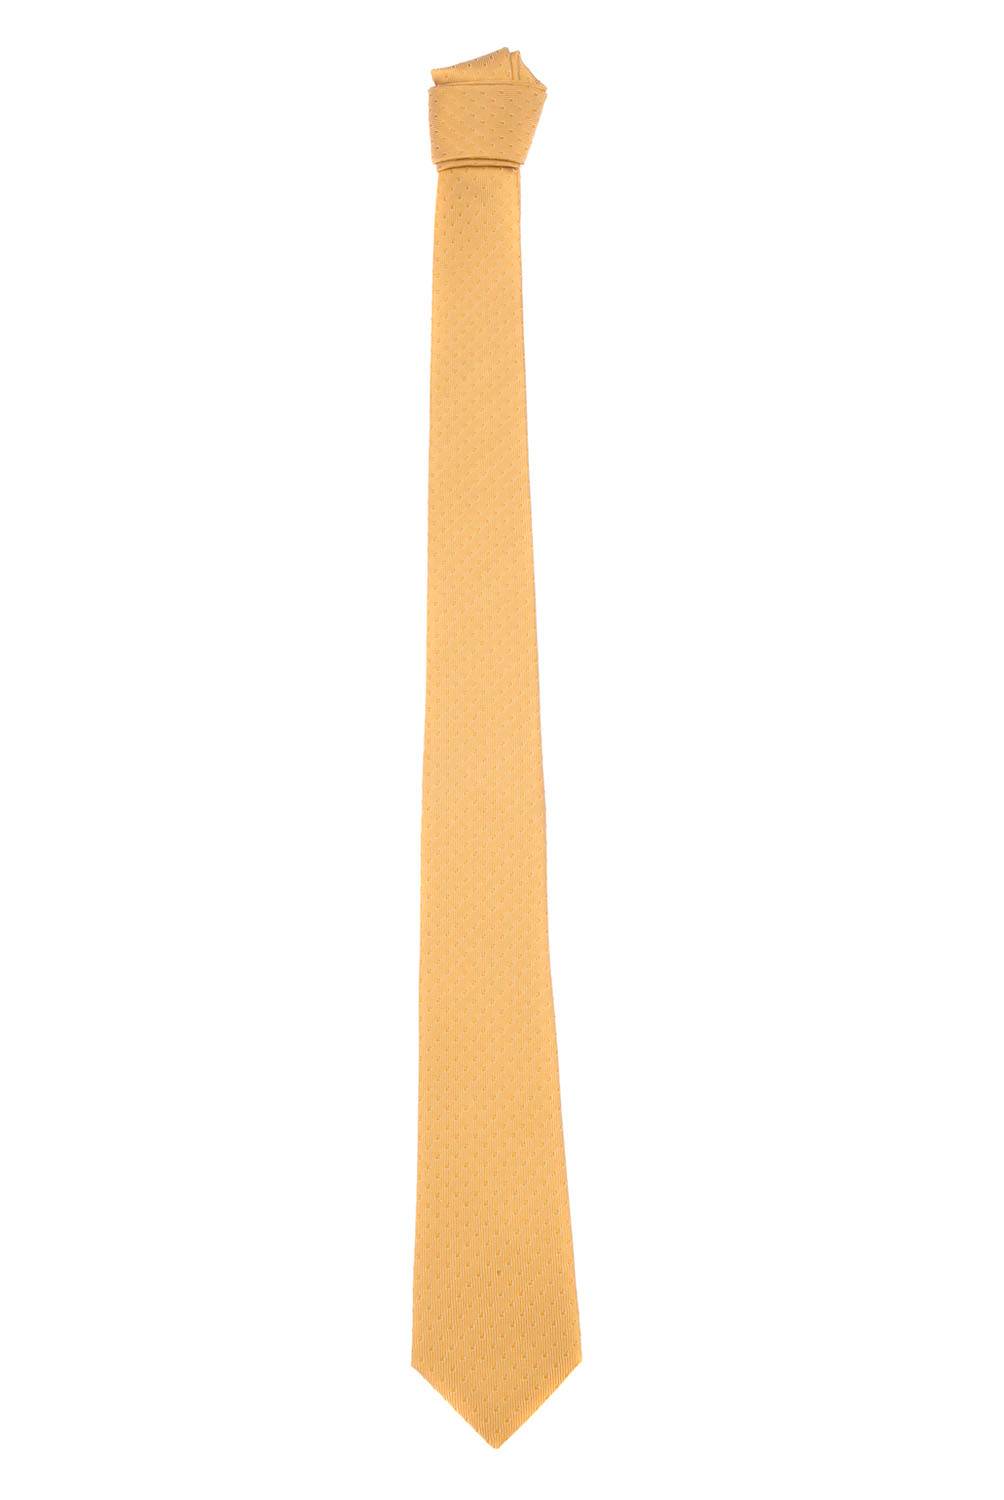 Christian Lacroix - Corbata Seda Texturado 6 cm